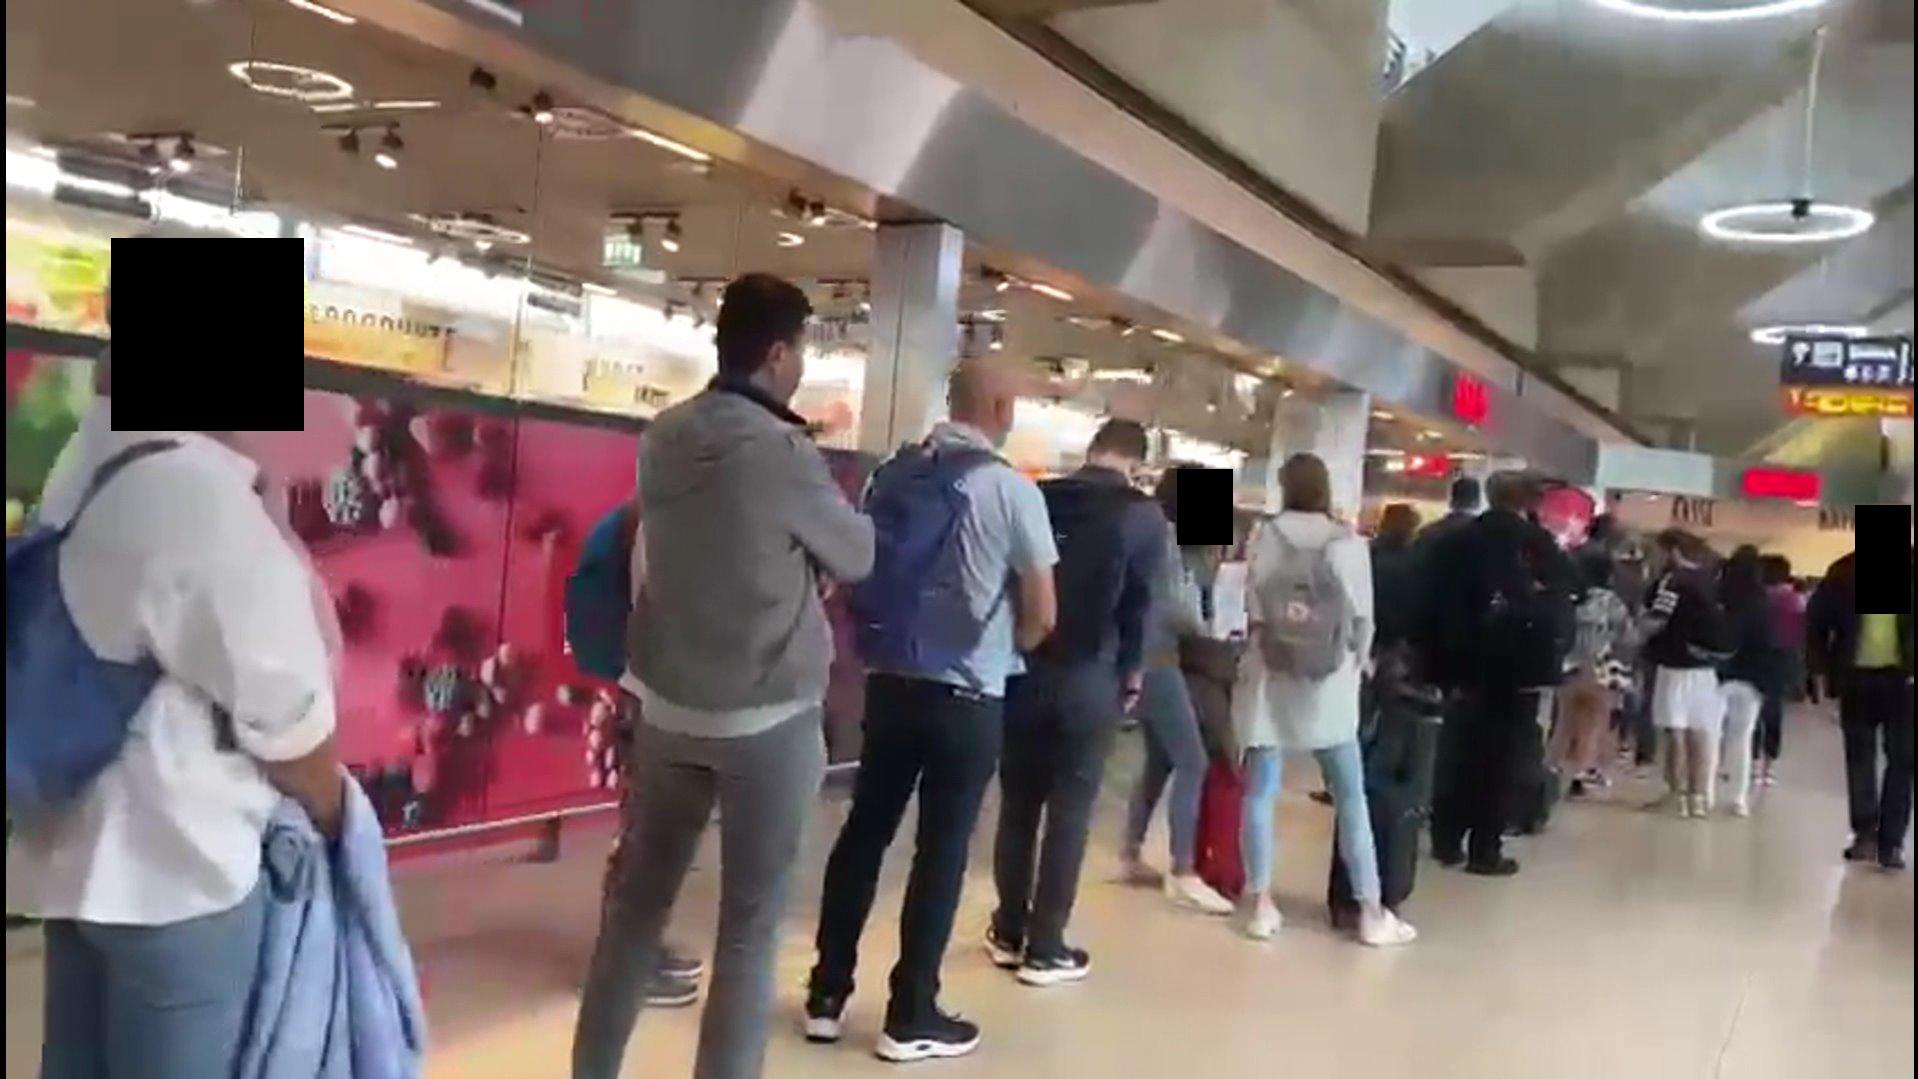 Wahnsinn am Flughafen Köln/ Bonn. Aus jeder Richtung stauen sich die Passagiere vor der Sicherheitskontrolle. Etliche Menschen verpassen ihren Flug.